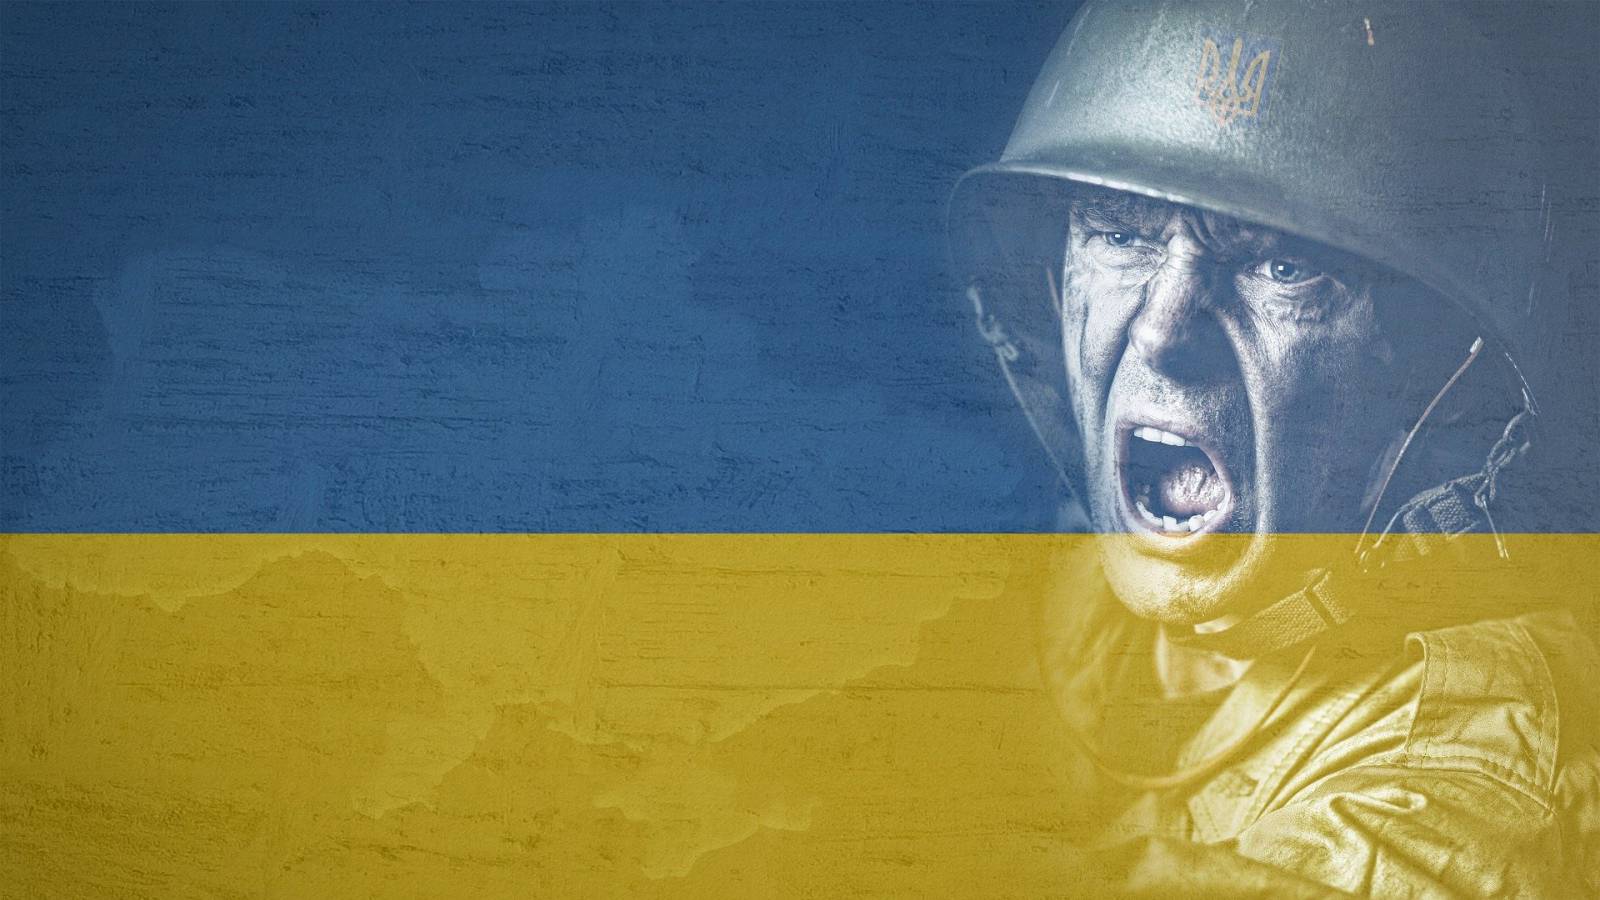 Ucraina a Capturat un Numar Impresionant de Tacuri si Vehicule Militare de la Rusia